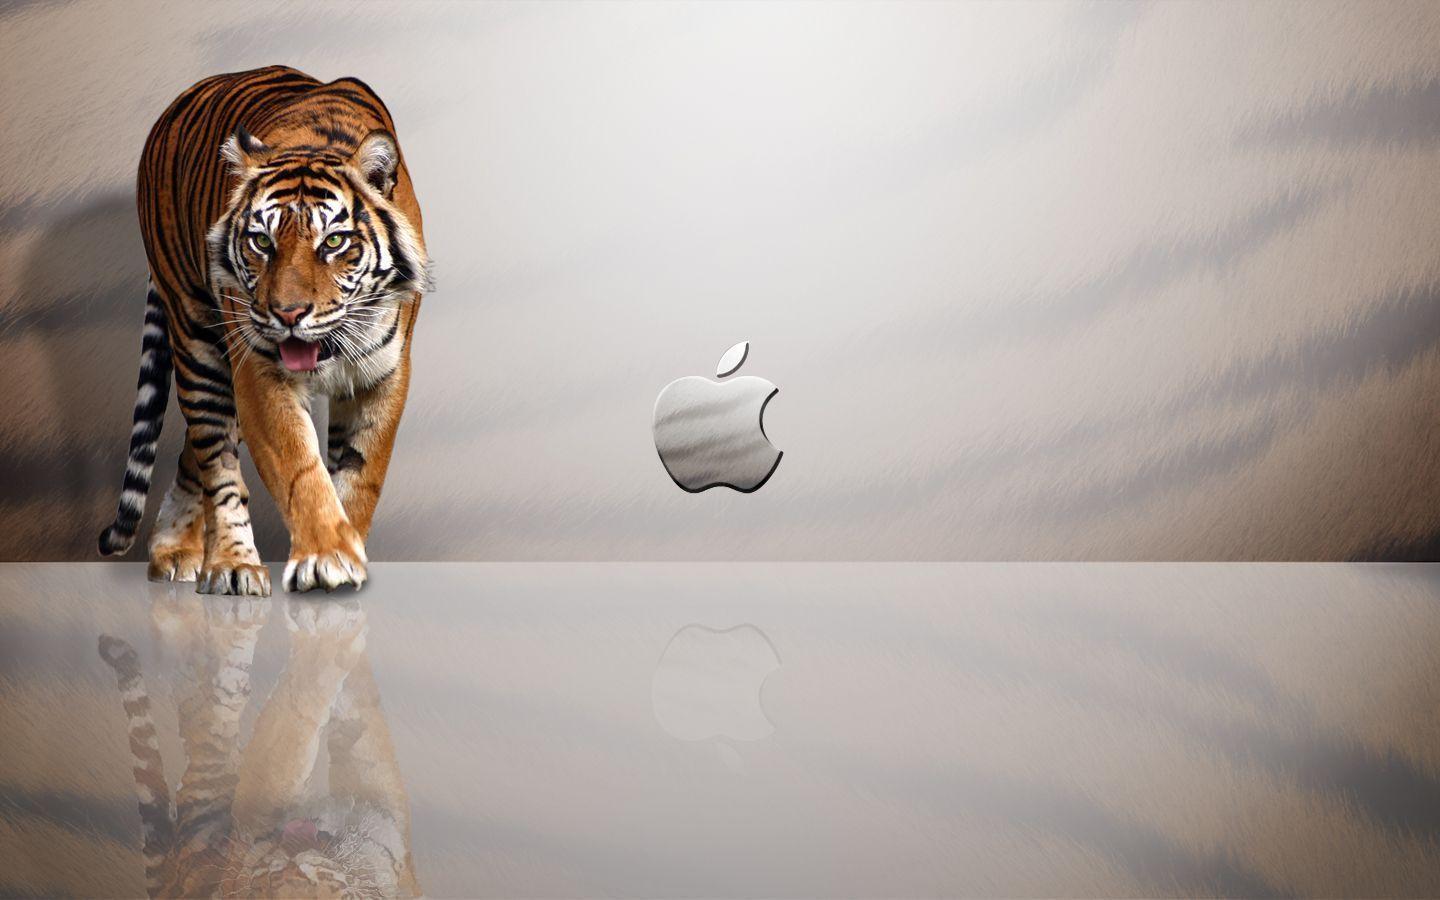 Wallpaper For > Mac Wallpaper Tiger